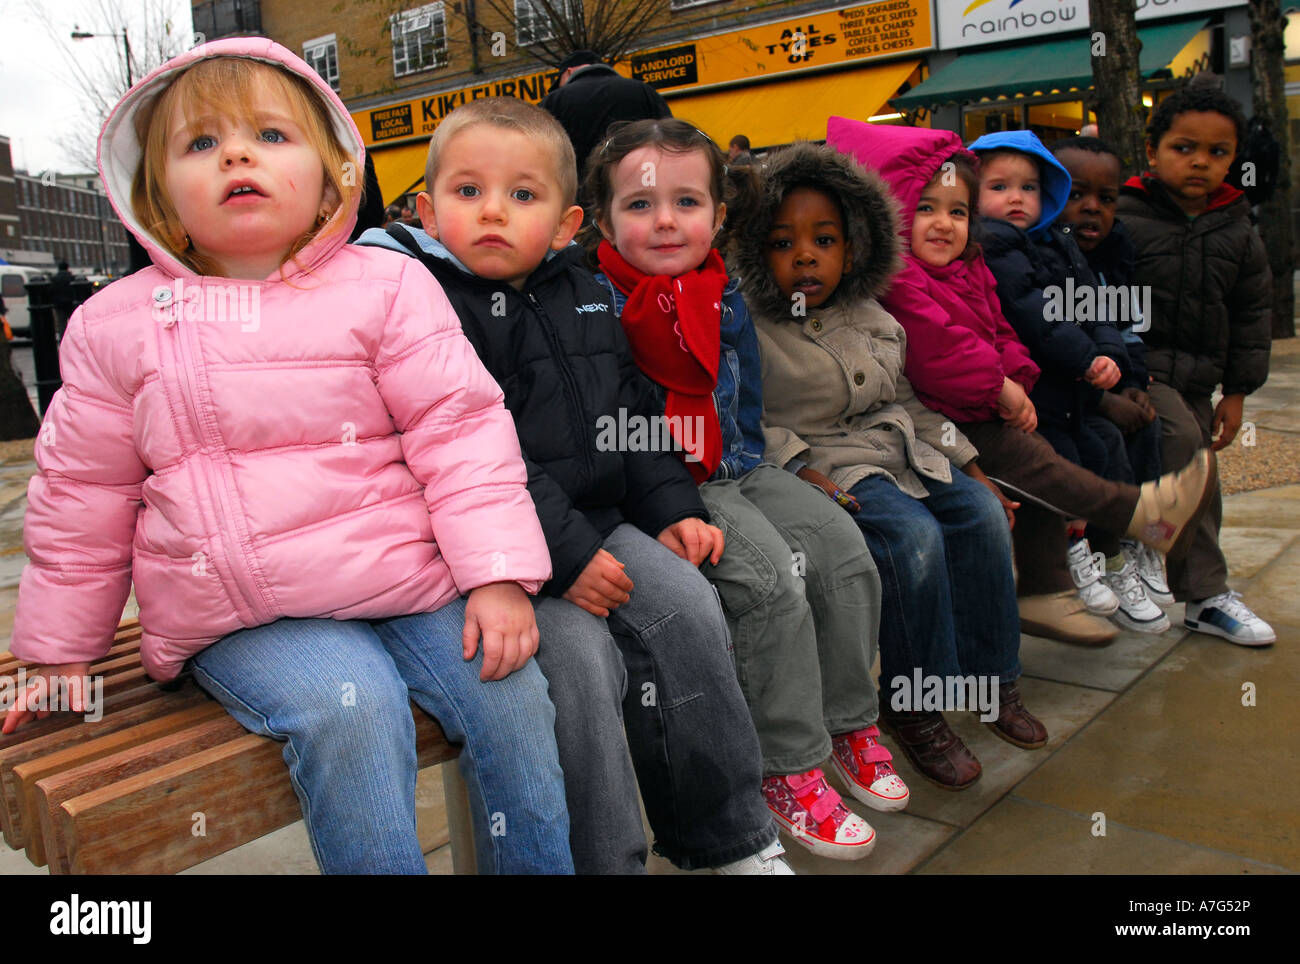 Grupo de 8 niños sentados en un banco, al oeste de Londres, Reino Unido. Foto de stock